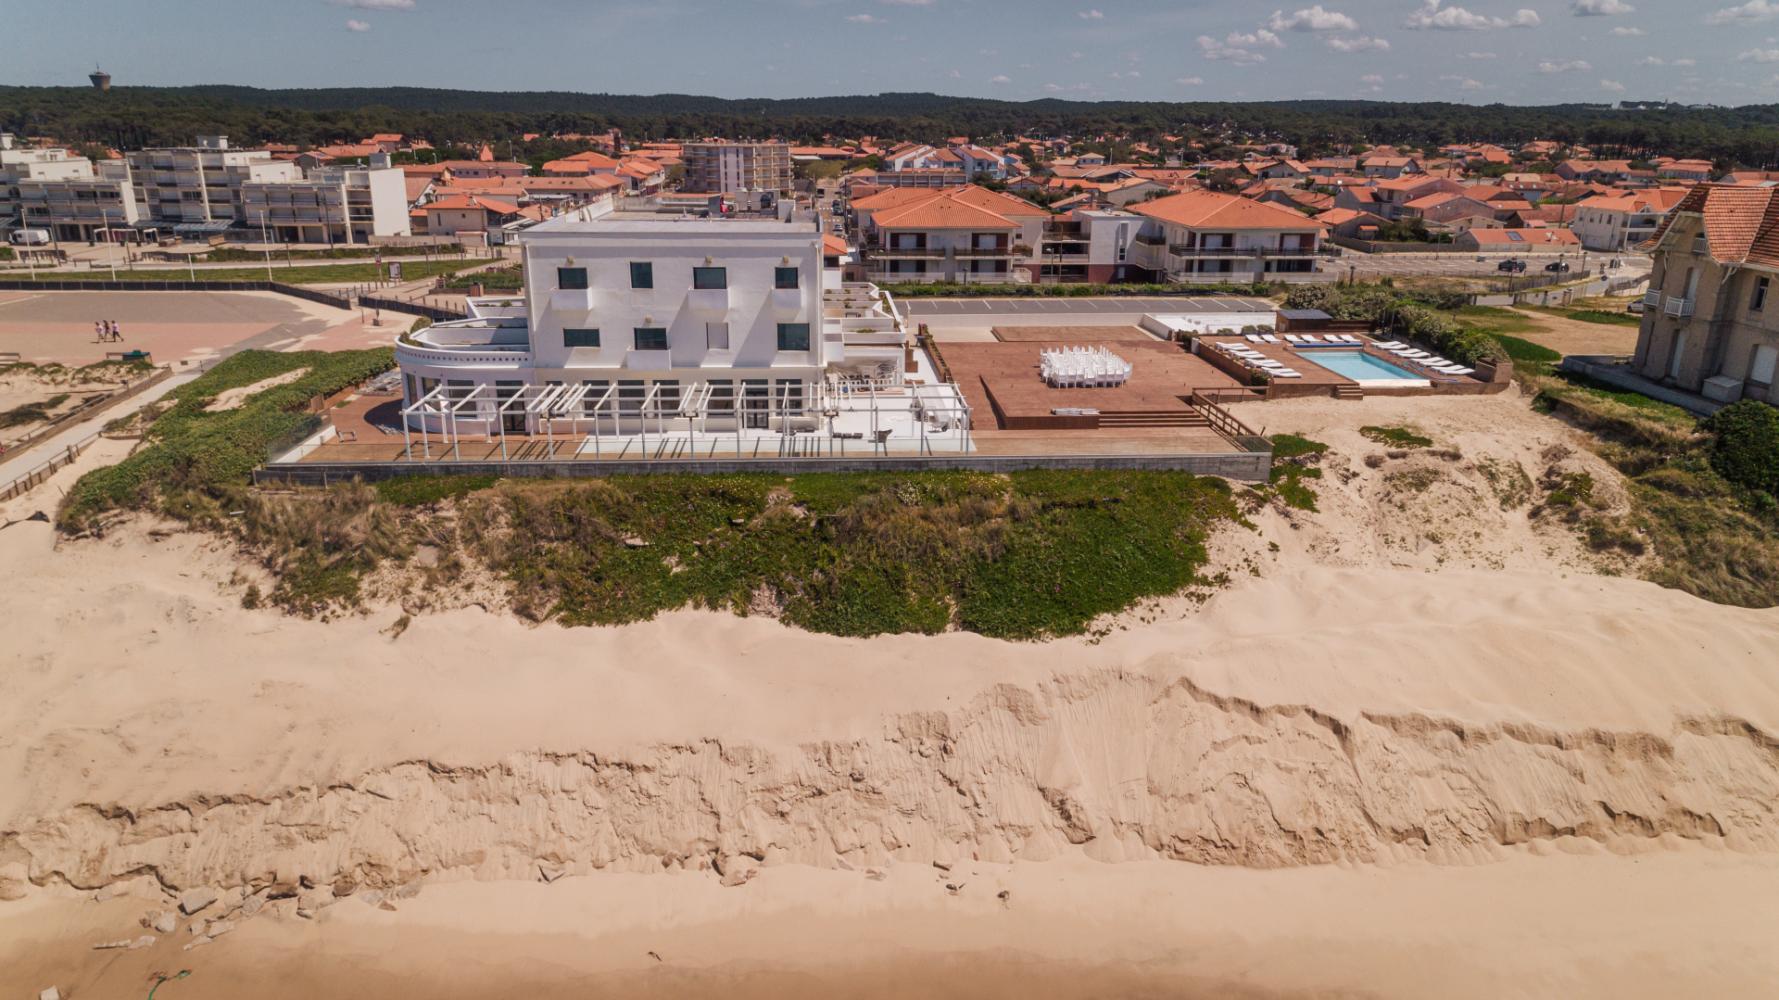 Le grand hôtel de la plage en mai 2020